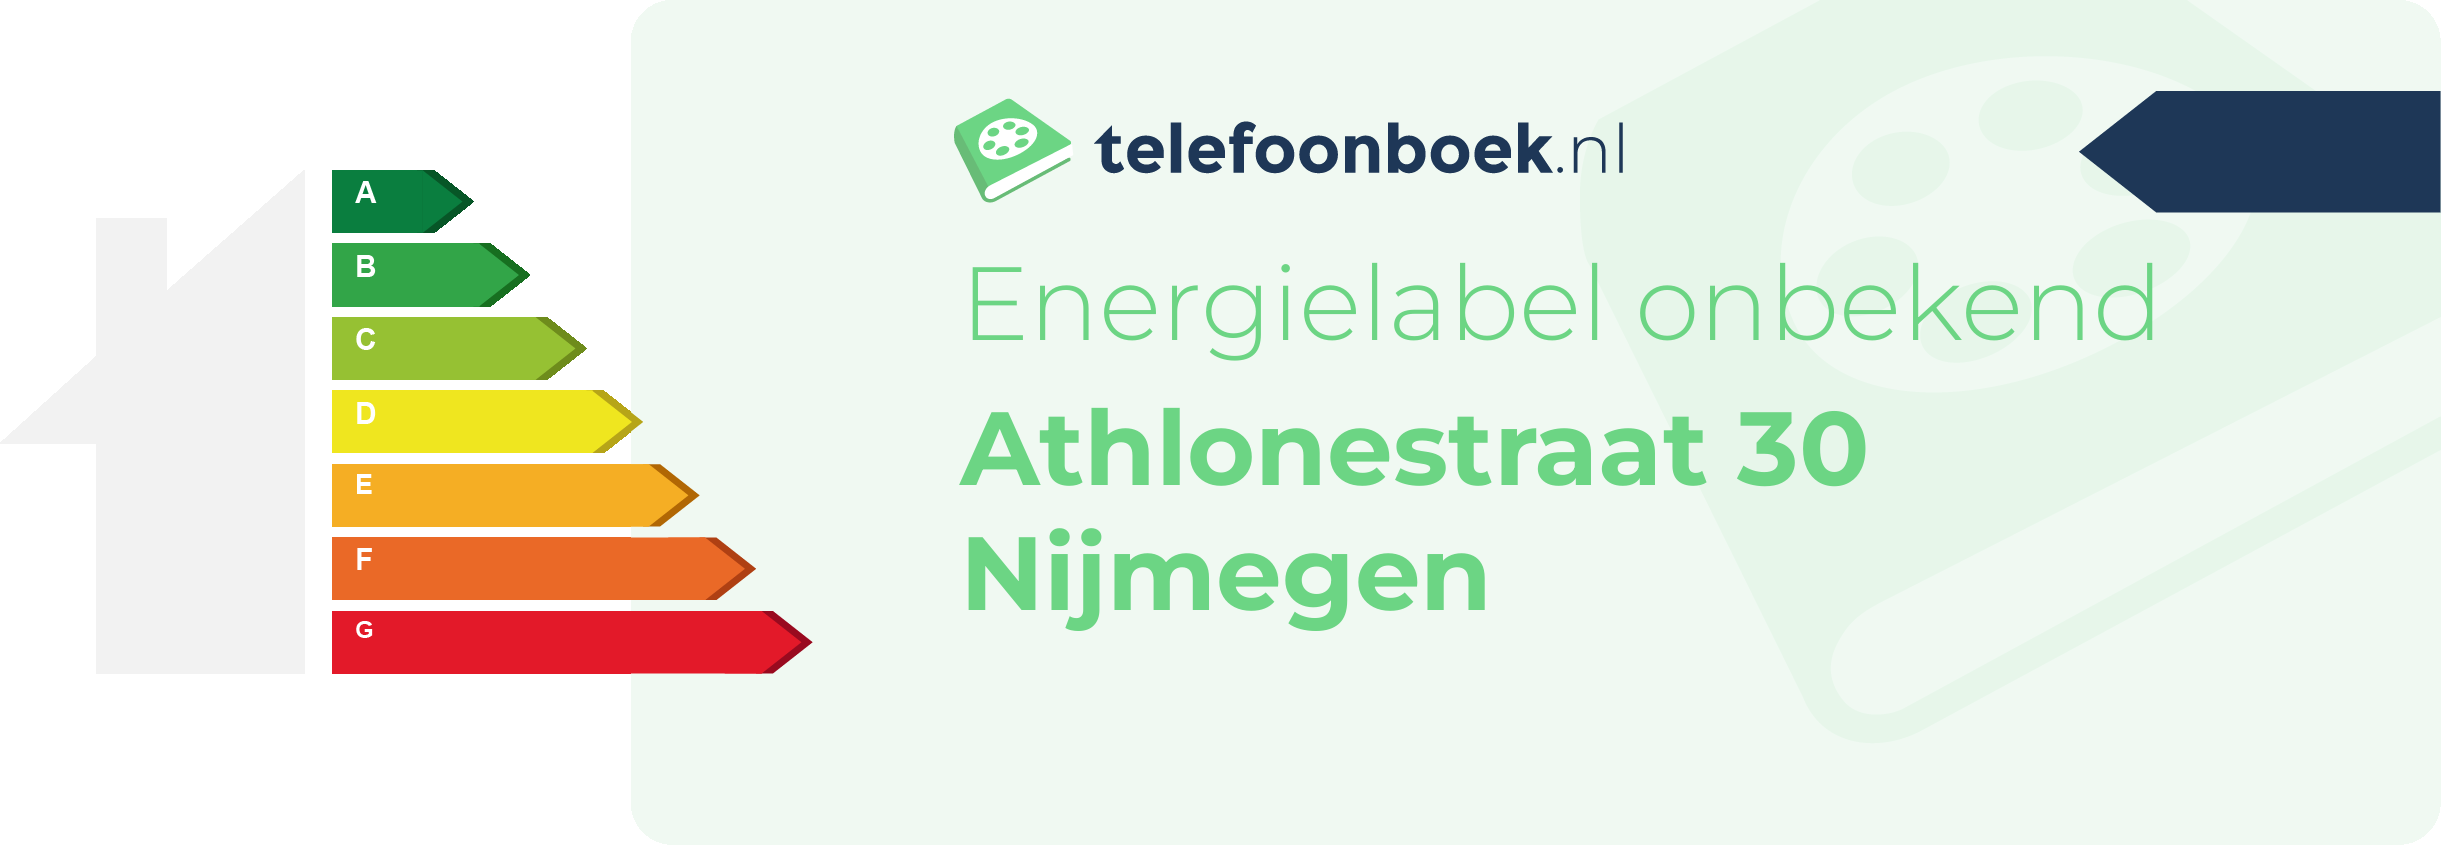 Energielabel Athlonestraat 30 Nijmegen